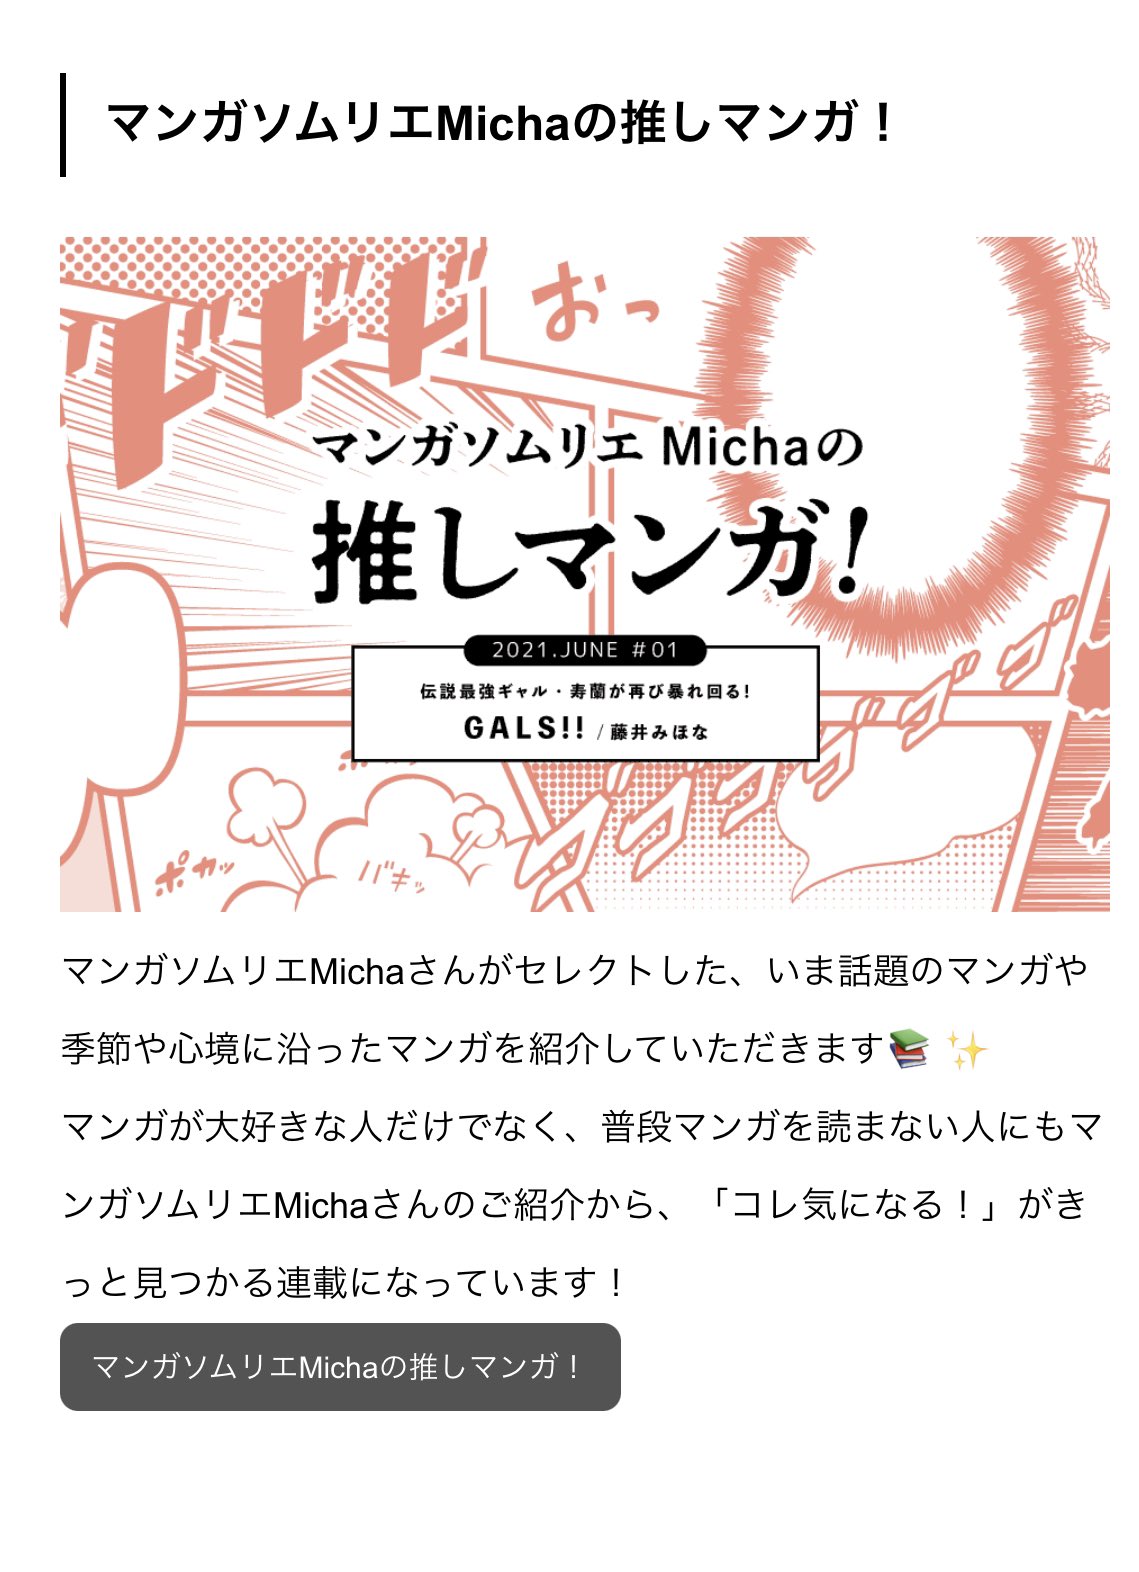 Micha マンガソムリエ Micha Manga Twitter